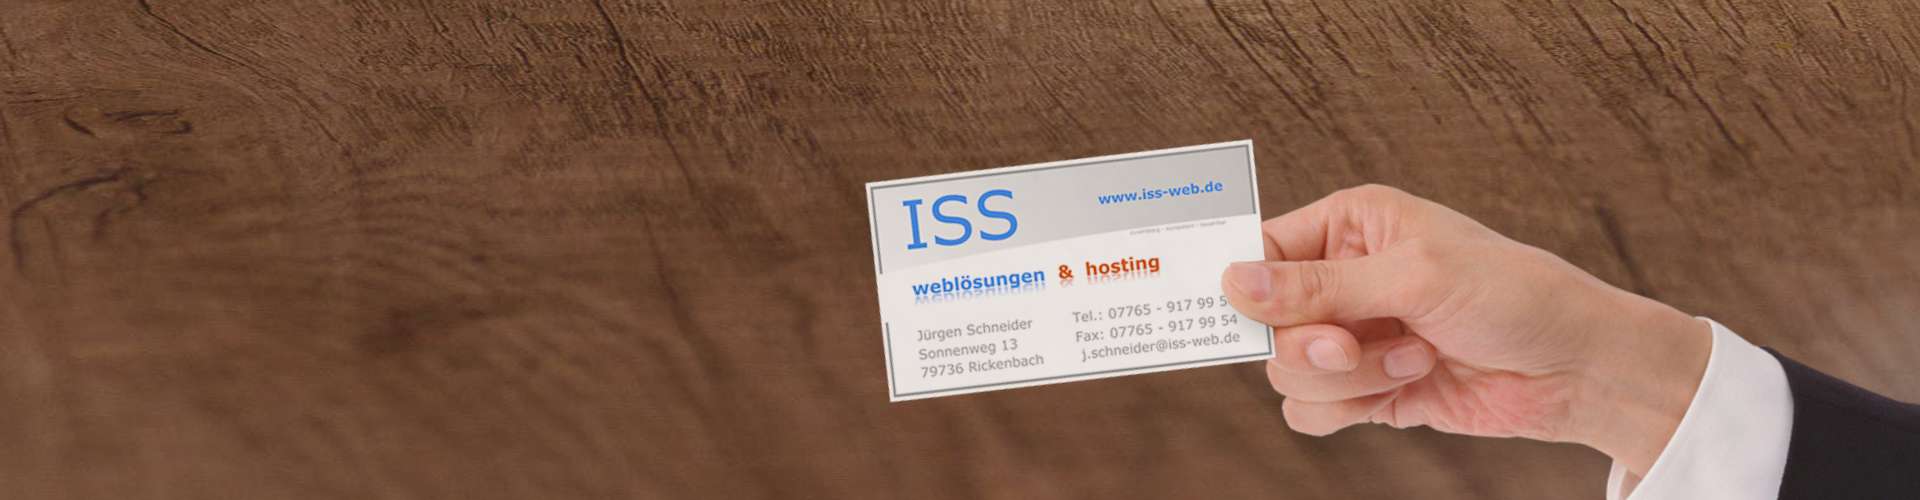 Referenzen Dienstleistungen | ISS - Internet Services | websites, hosting & digital marketing